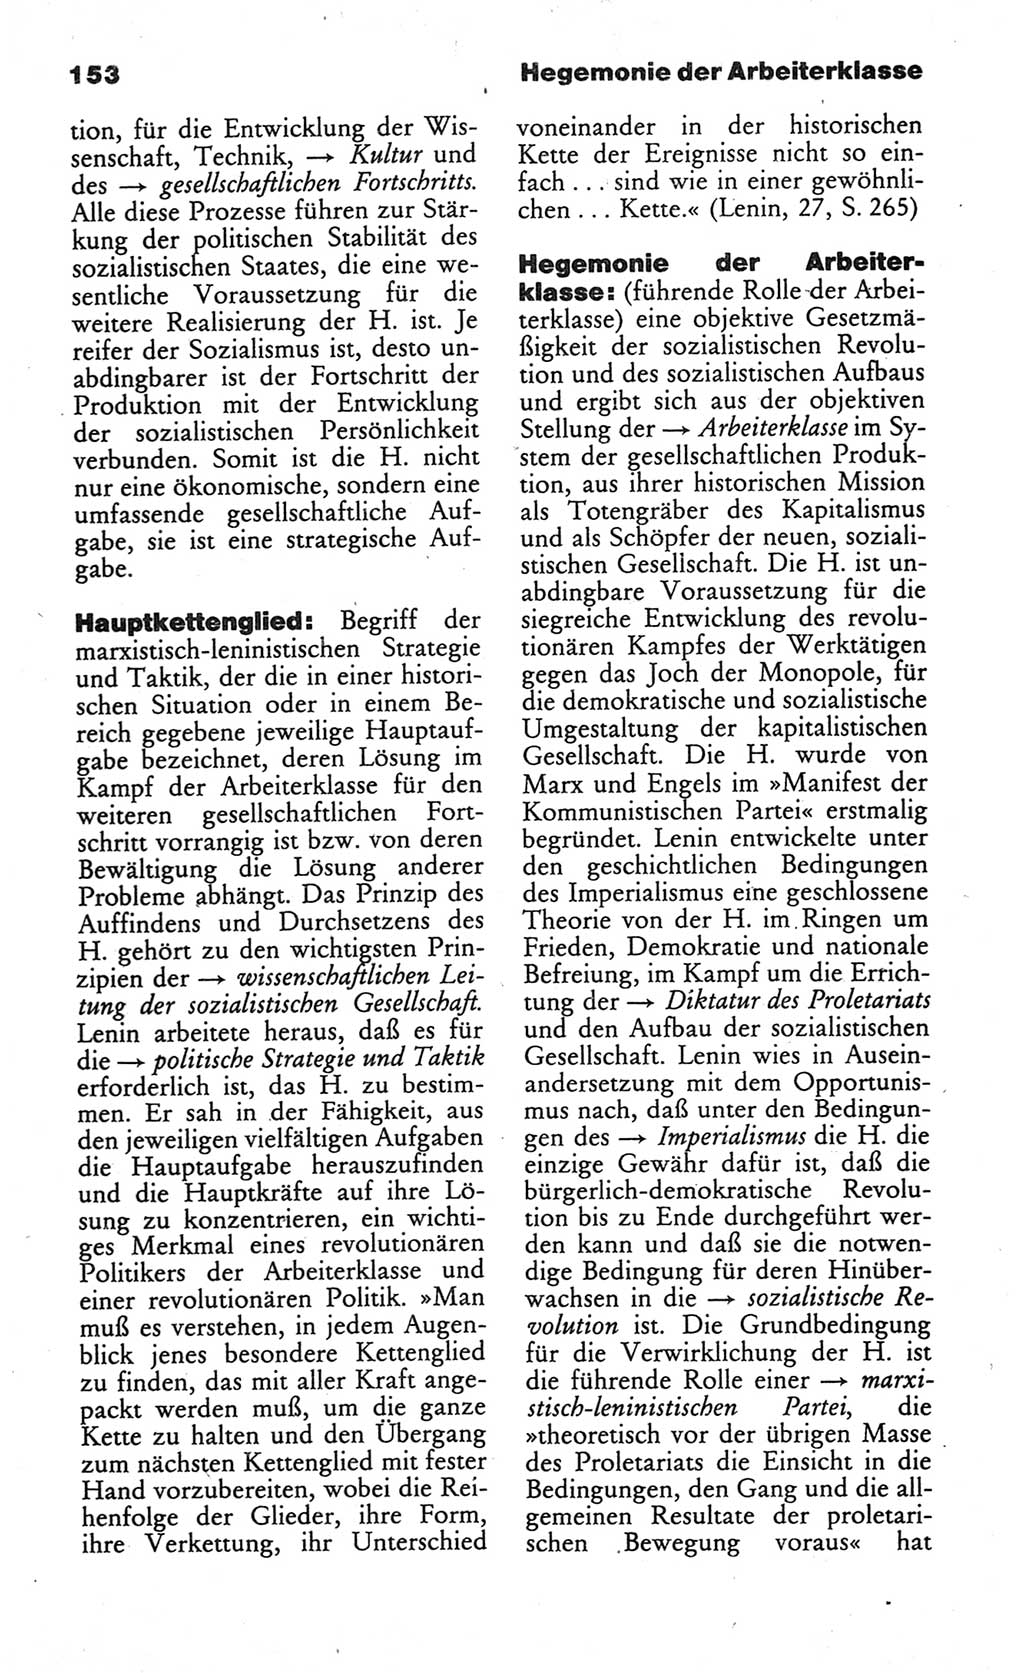 Wörterbuch des wissenschaftlichen Kommunismus [Deutsche Demokratische Republik (DDR)] 1984, Seite 153 (Wb. wiss. Komm. DDR 1984, S. 153)